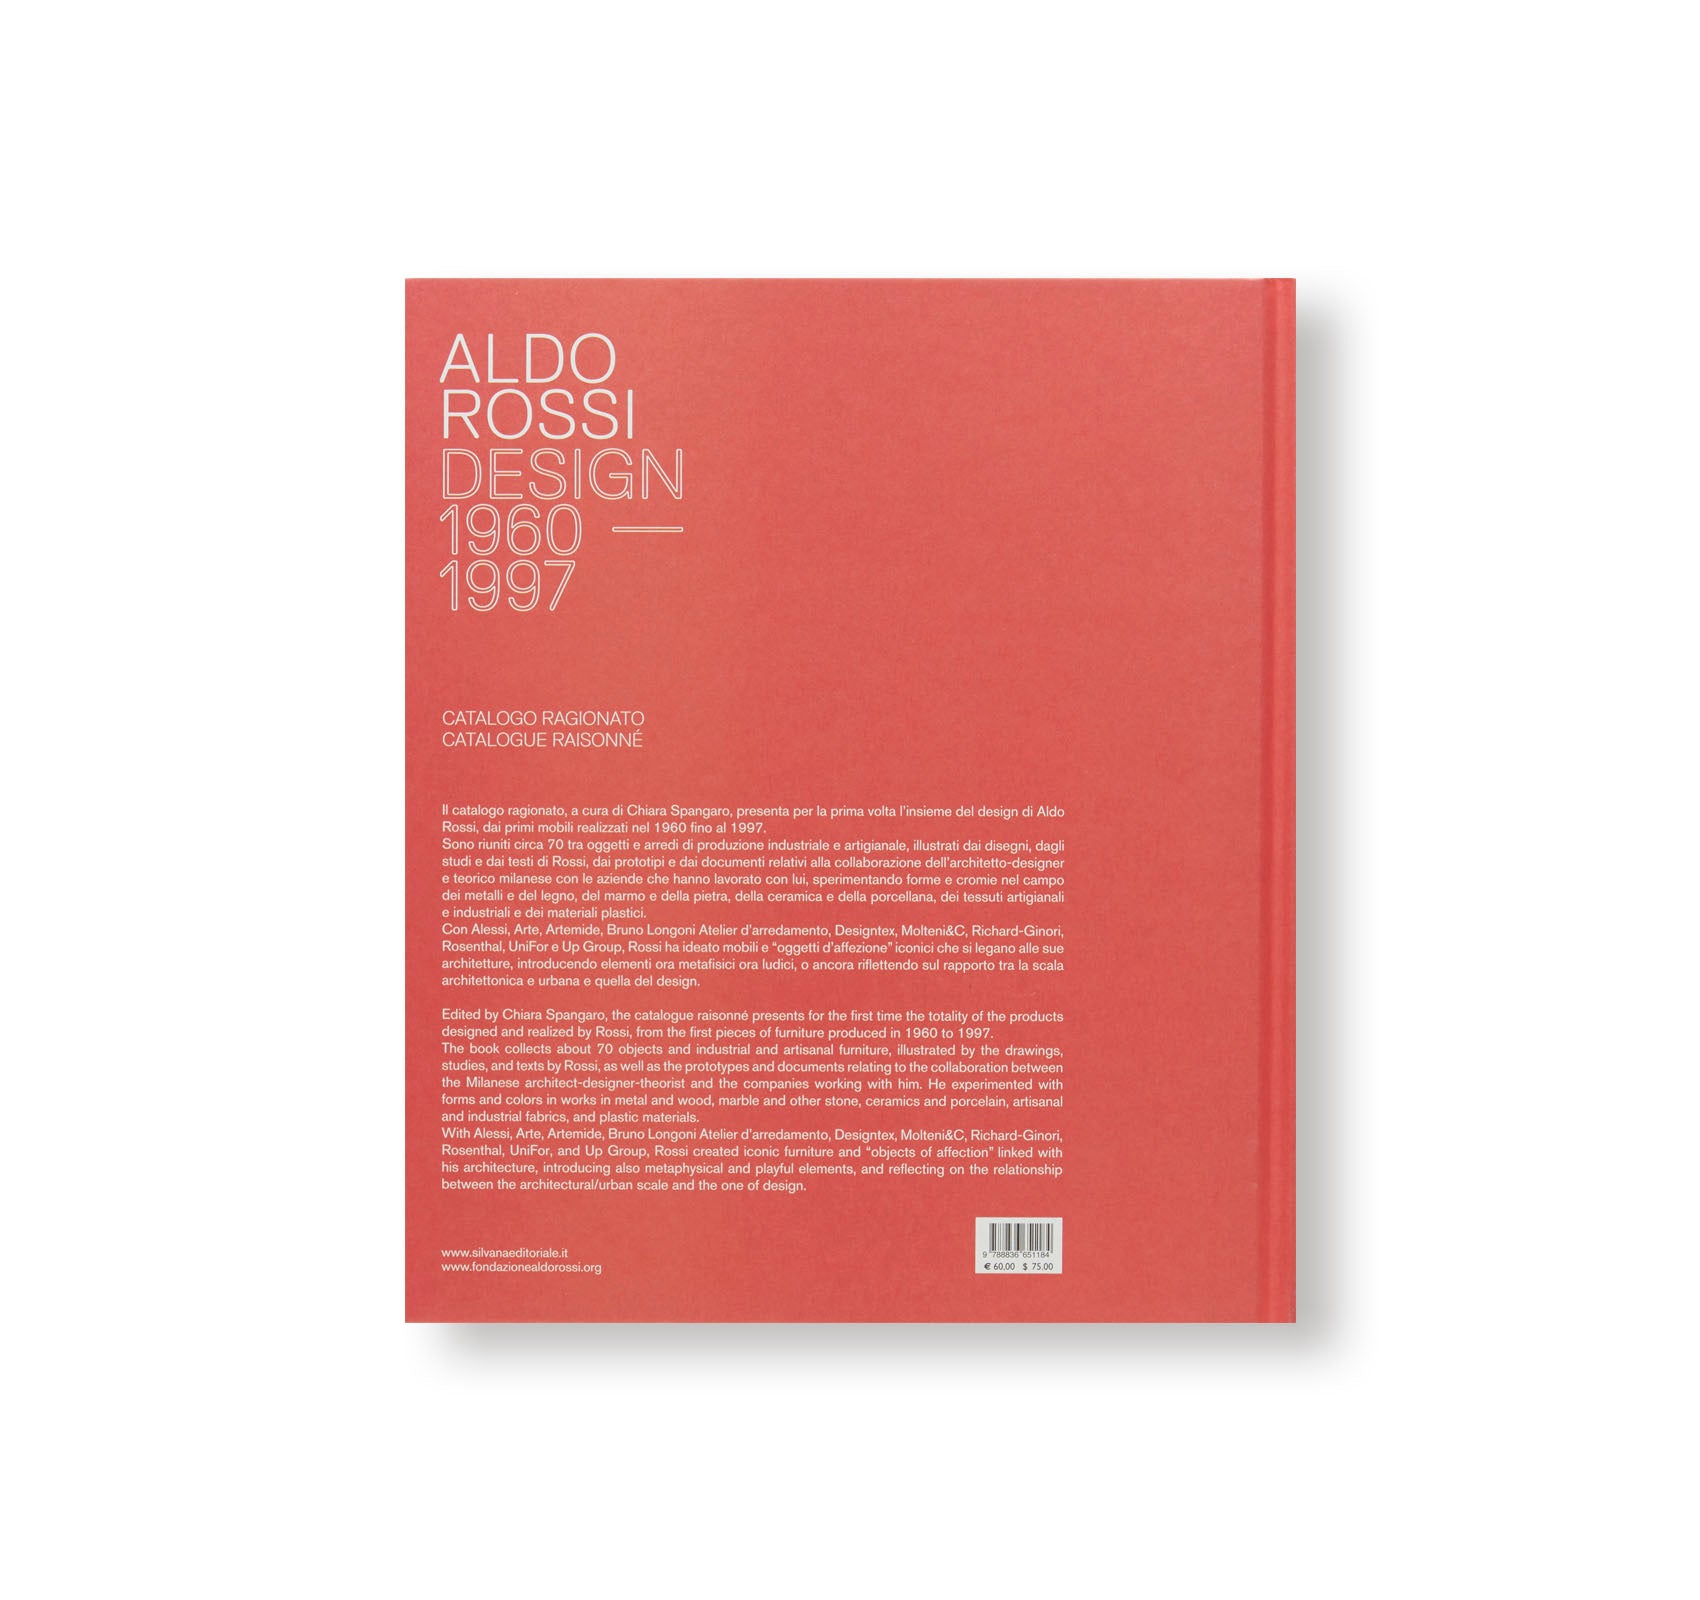 ALDO ROSSI: DESIGN 1960–1997 by Aldo Rossi